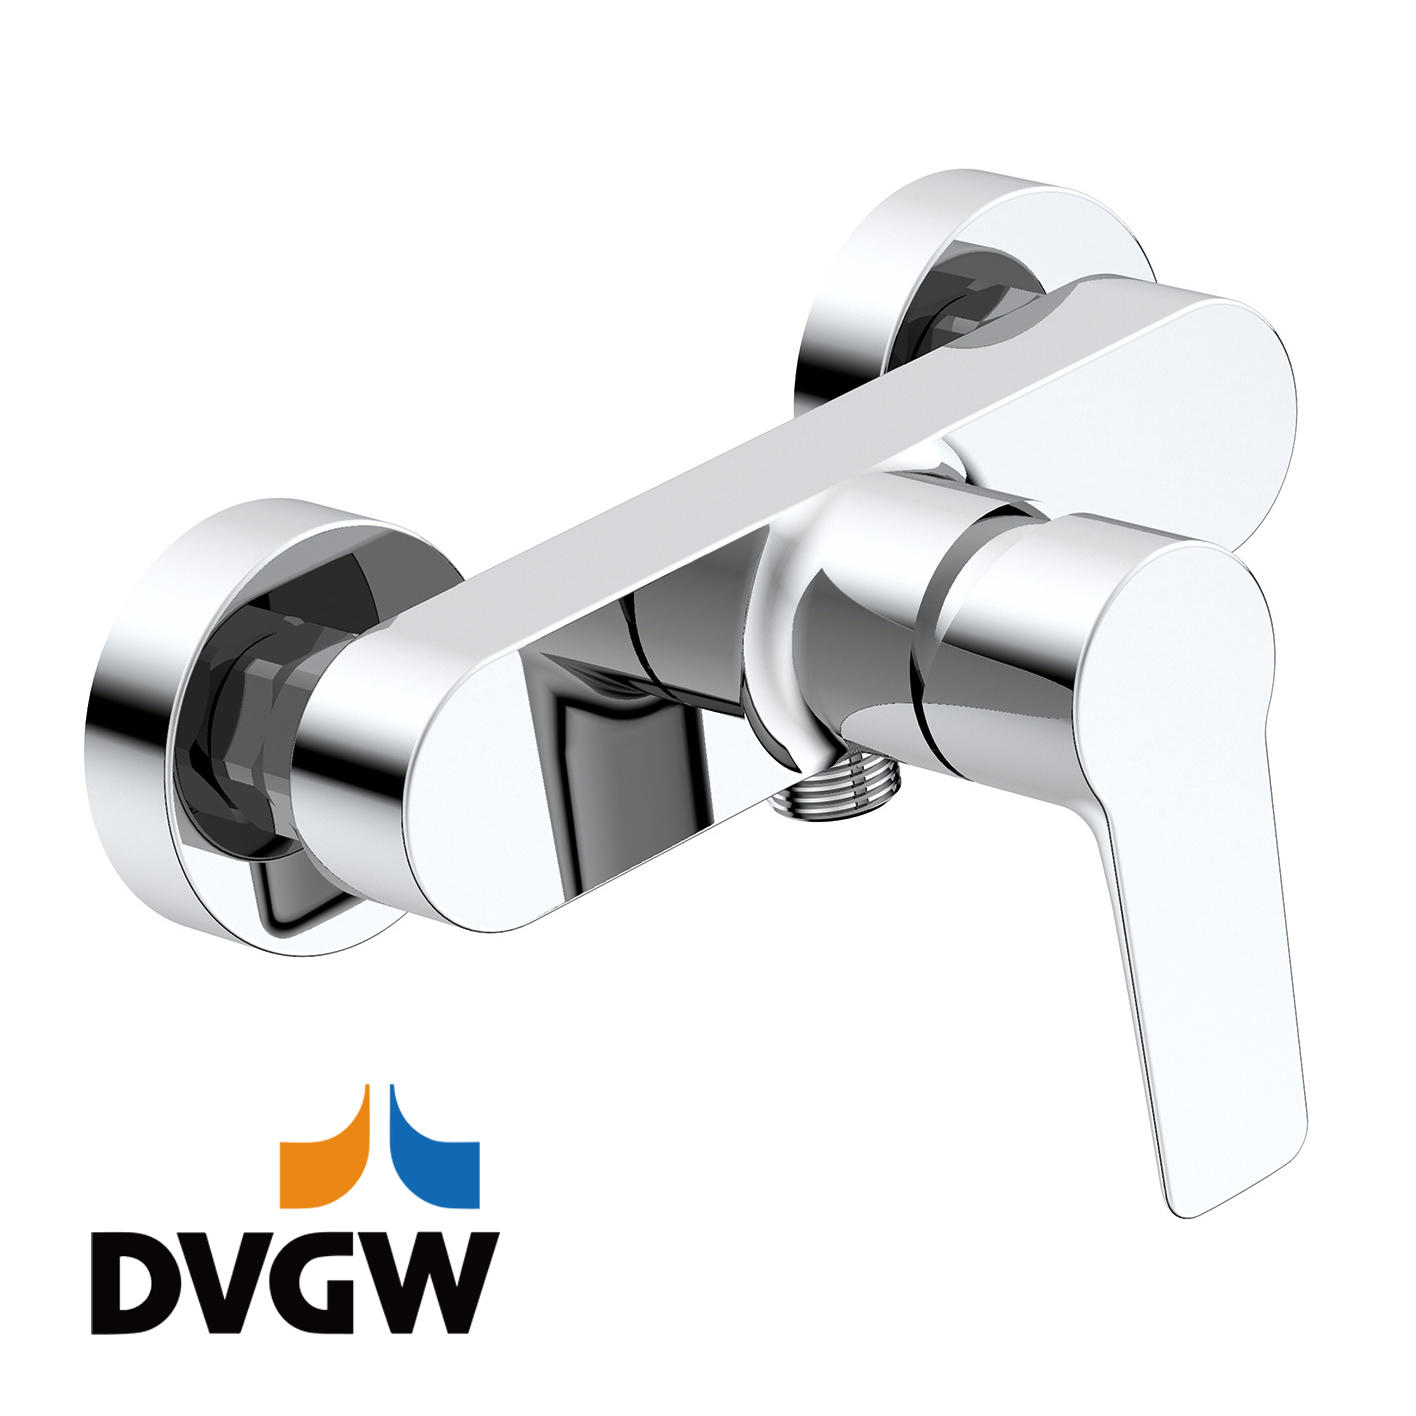 3187-20 diperakui DVGW, paip loyang tuil tunggal pengadun pancuran mandian air panas/sejuk yang dipasang di dinding